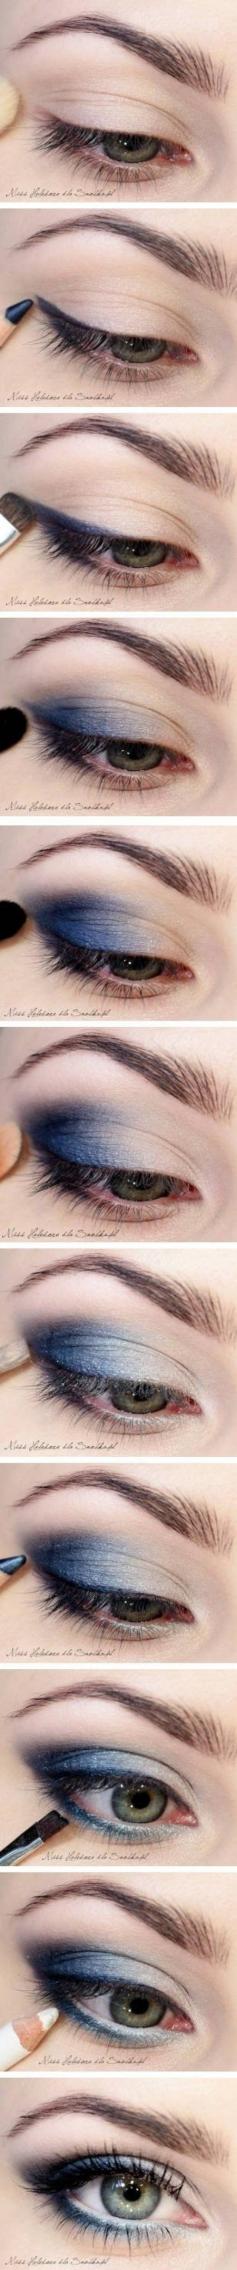 Tutorial for Navy Smokey Eye #eyes #eyemakeup #smokeyeye #stepbystep #navu #eyeshadow #howto - bellashoot.com #pictorial